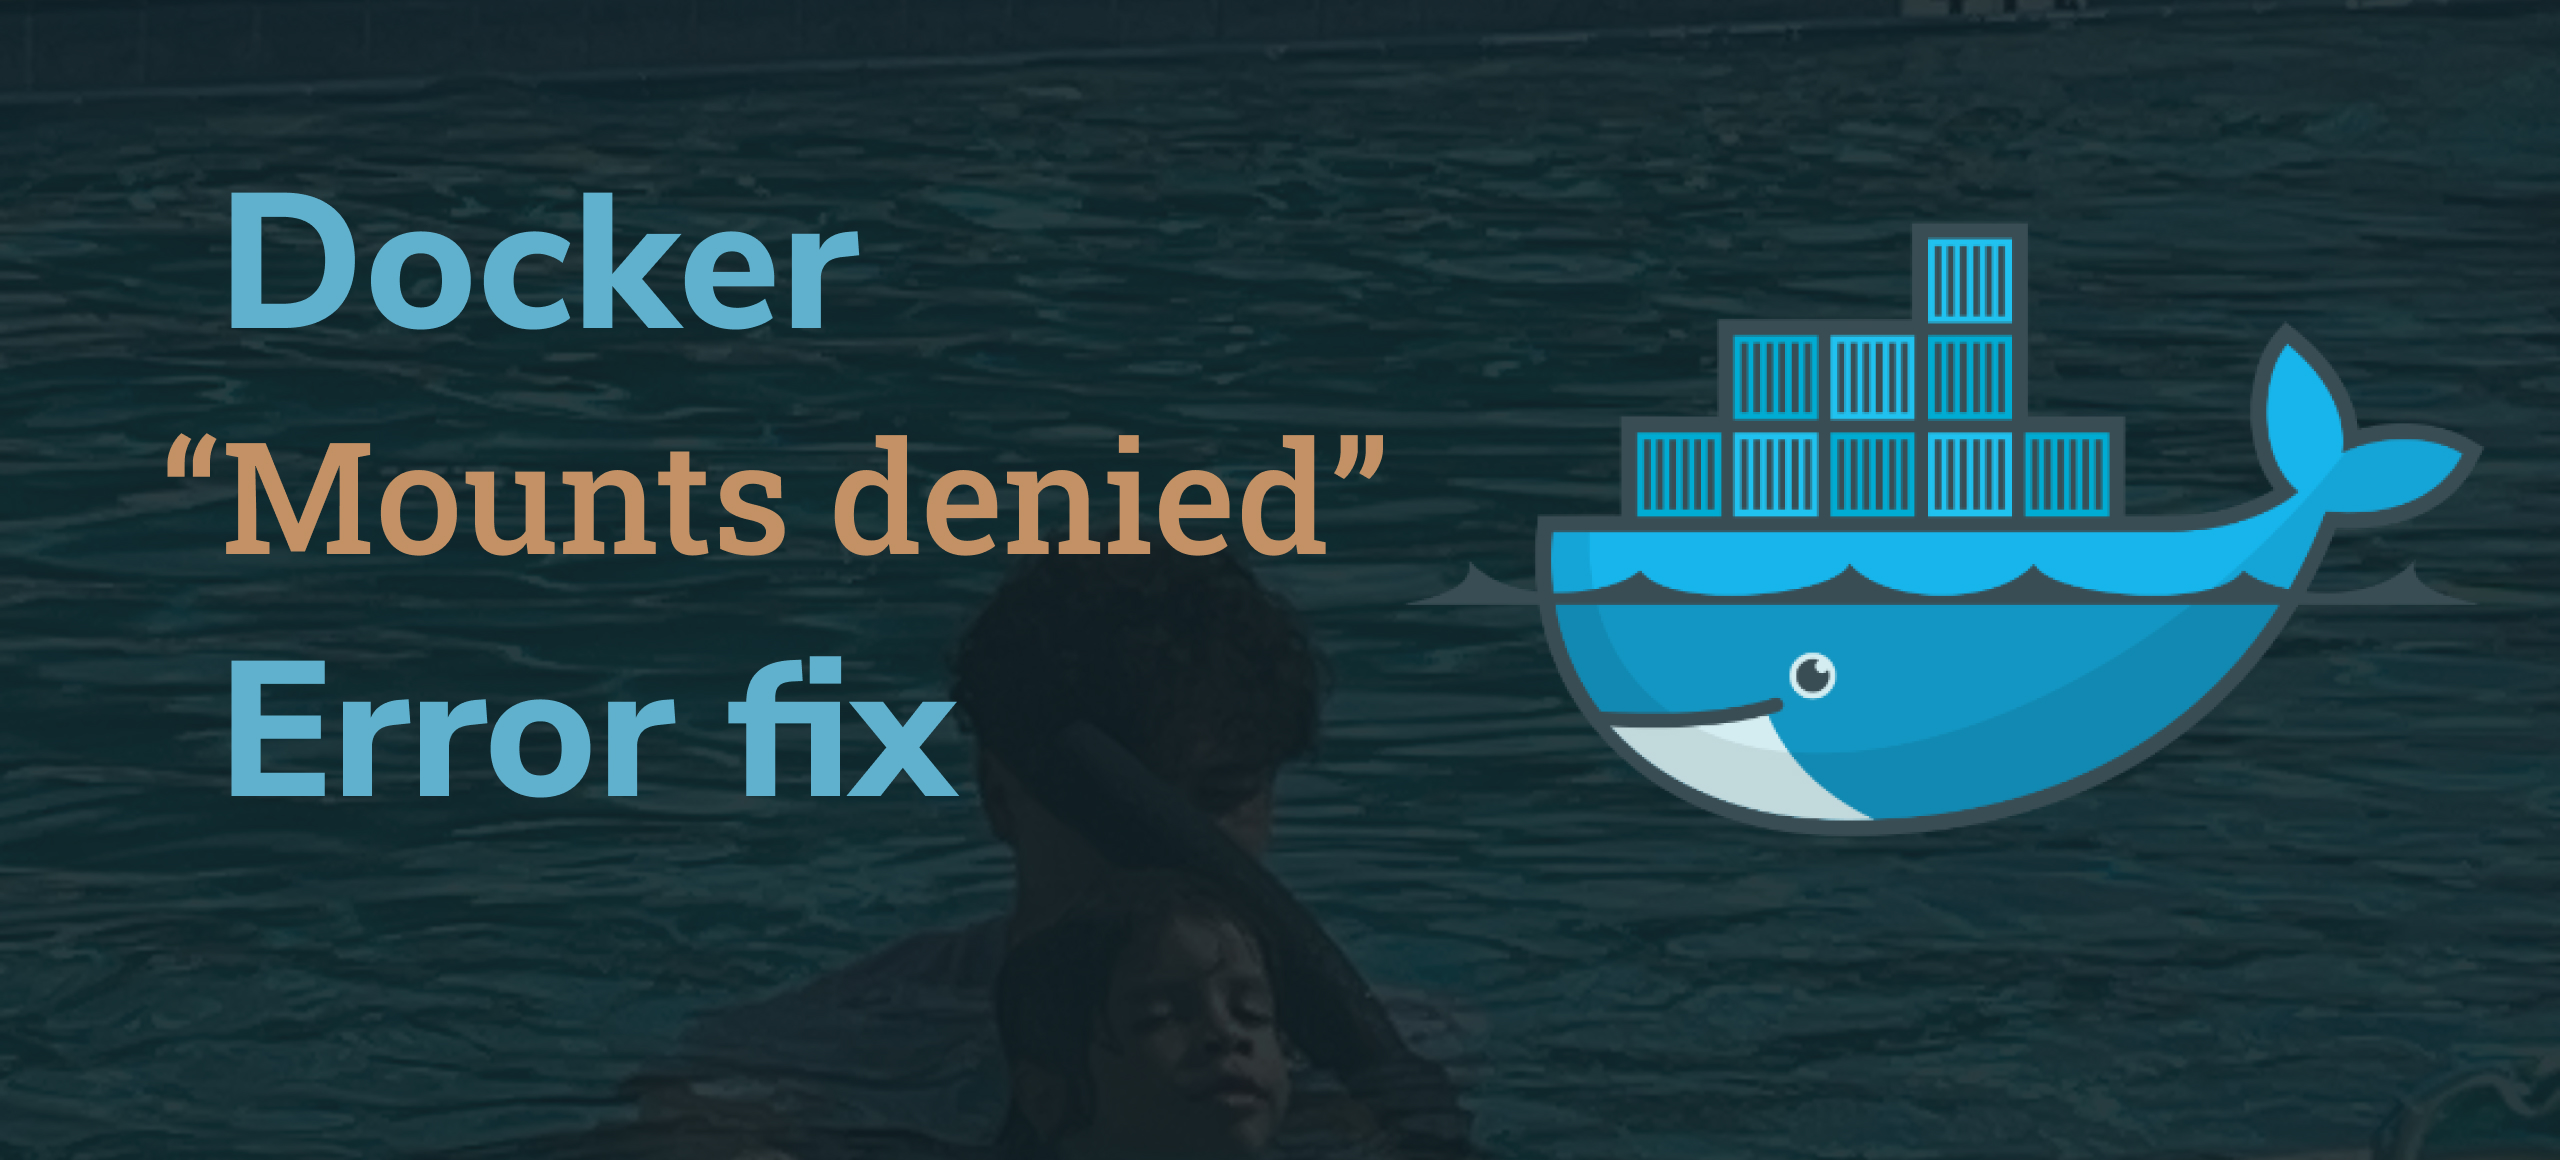 Docker “Mounts denied” Error Fix